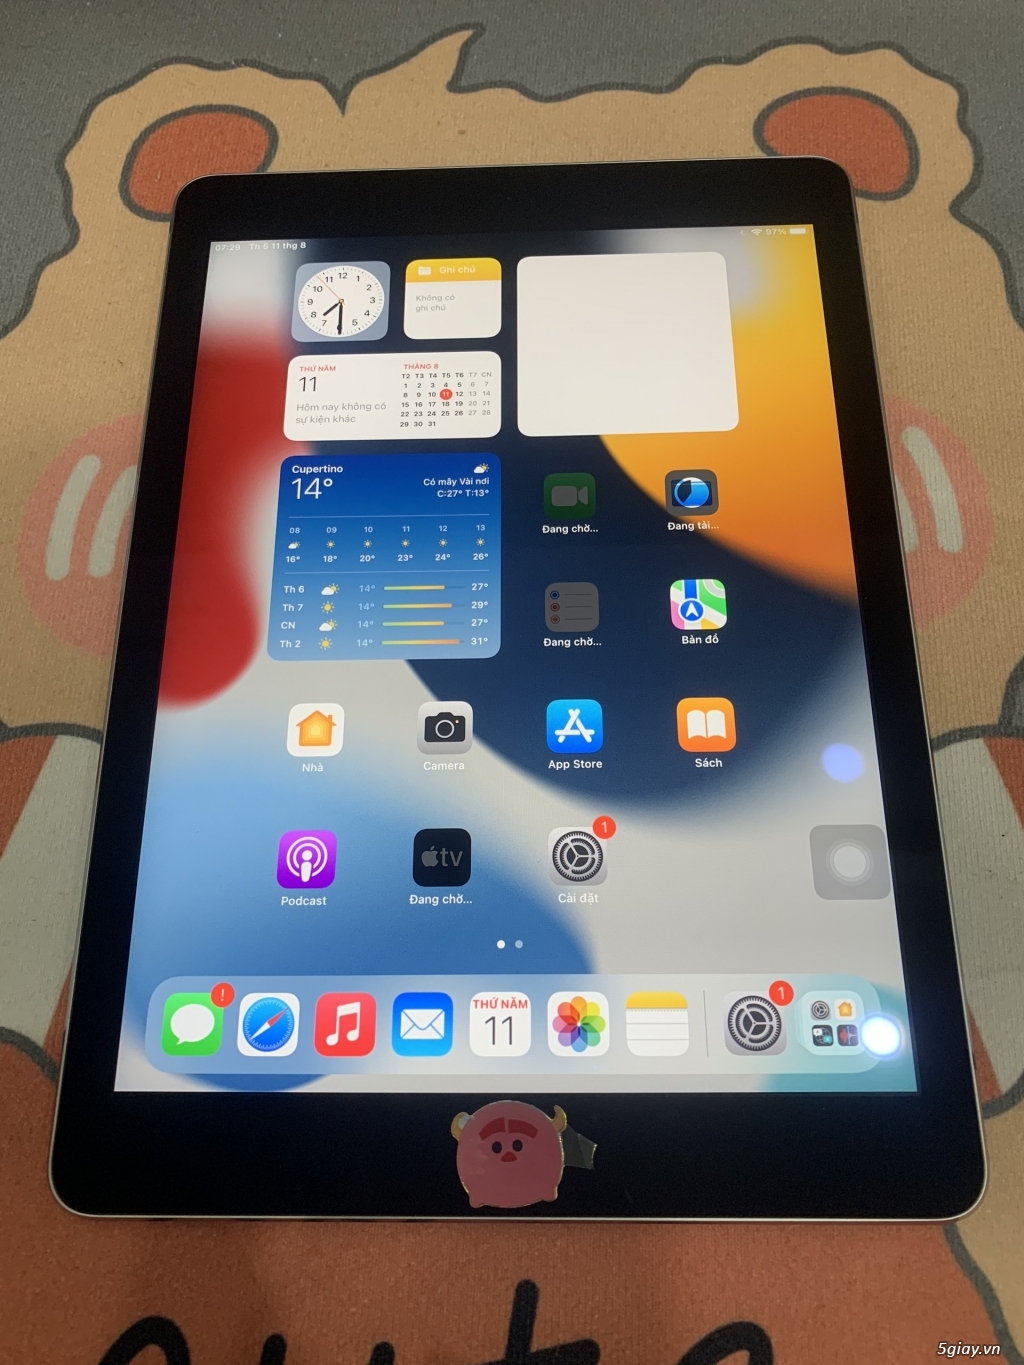 Apple iPad Air 2 & iPad Air 1, bản Wifi, hàng Mỹ, nguyên zin giá rẻ - 3